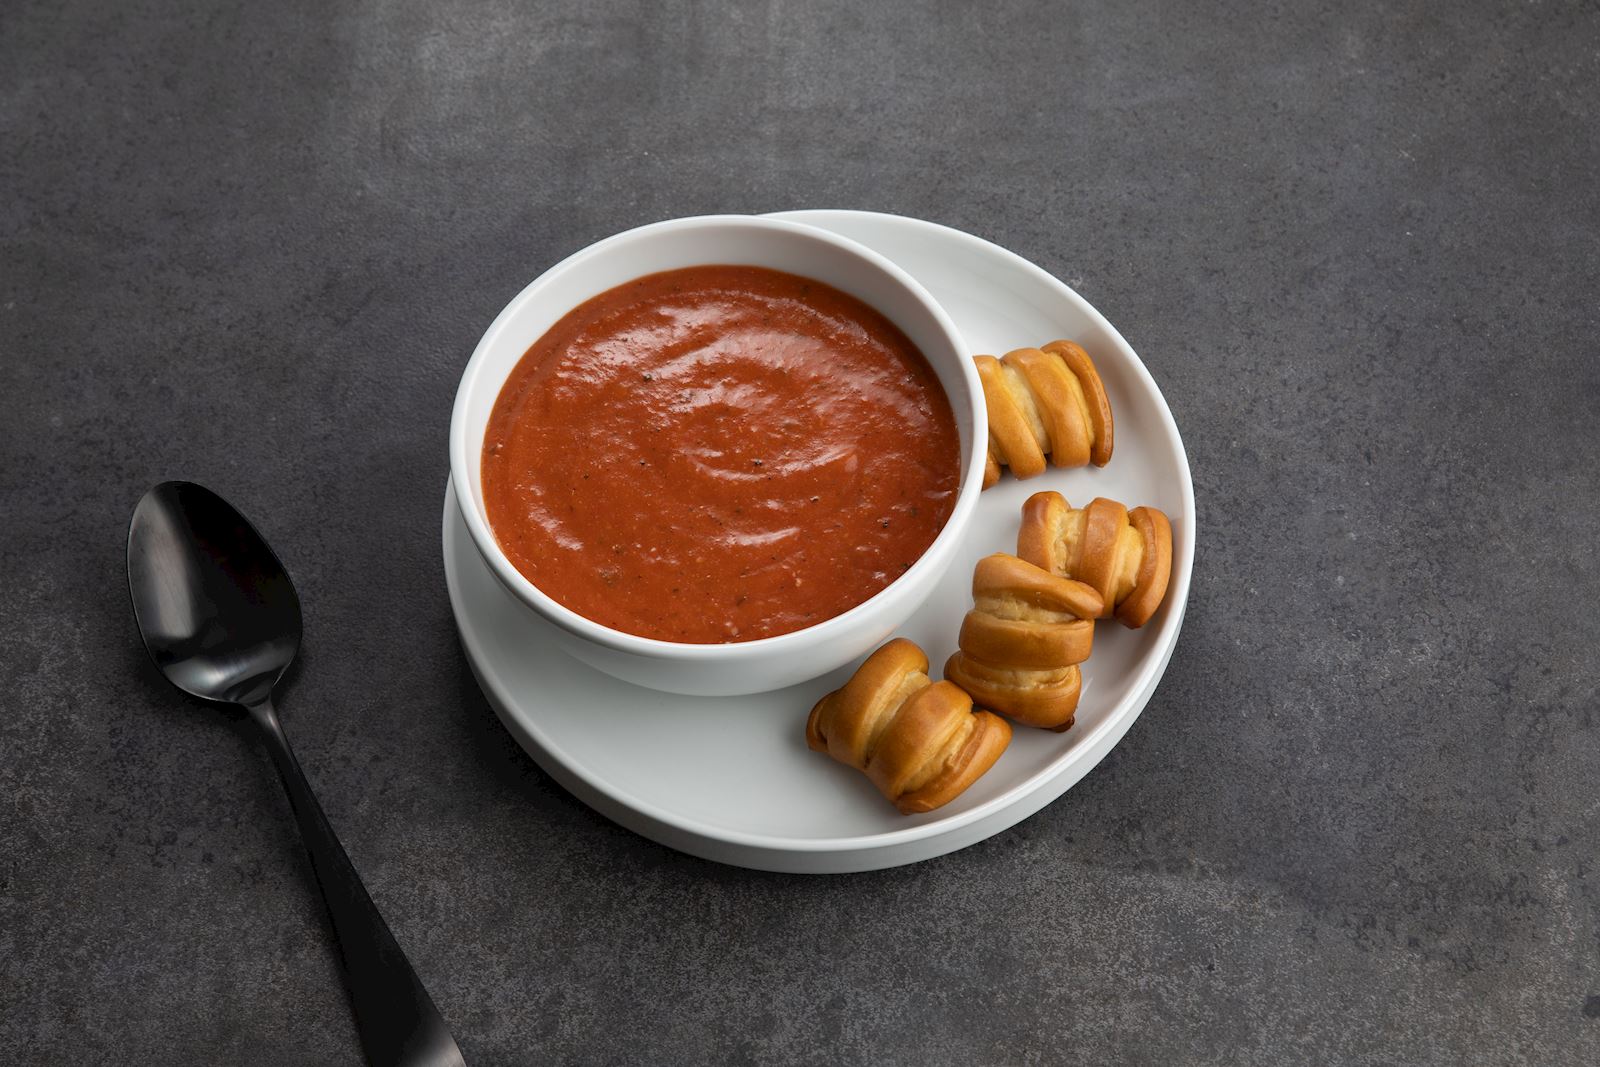 Tomato Soup and Pretzel Bites